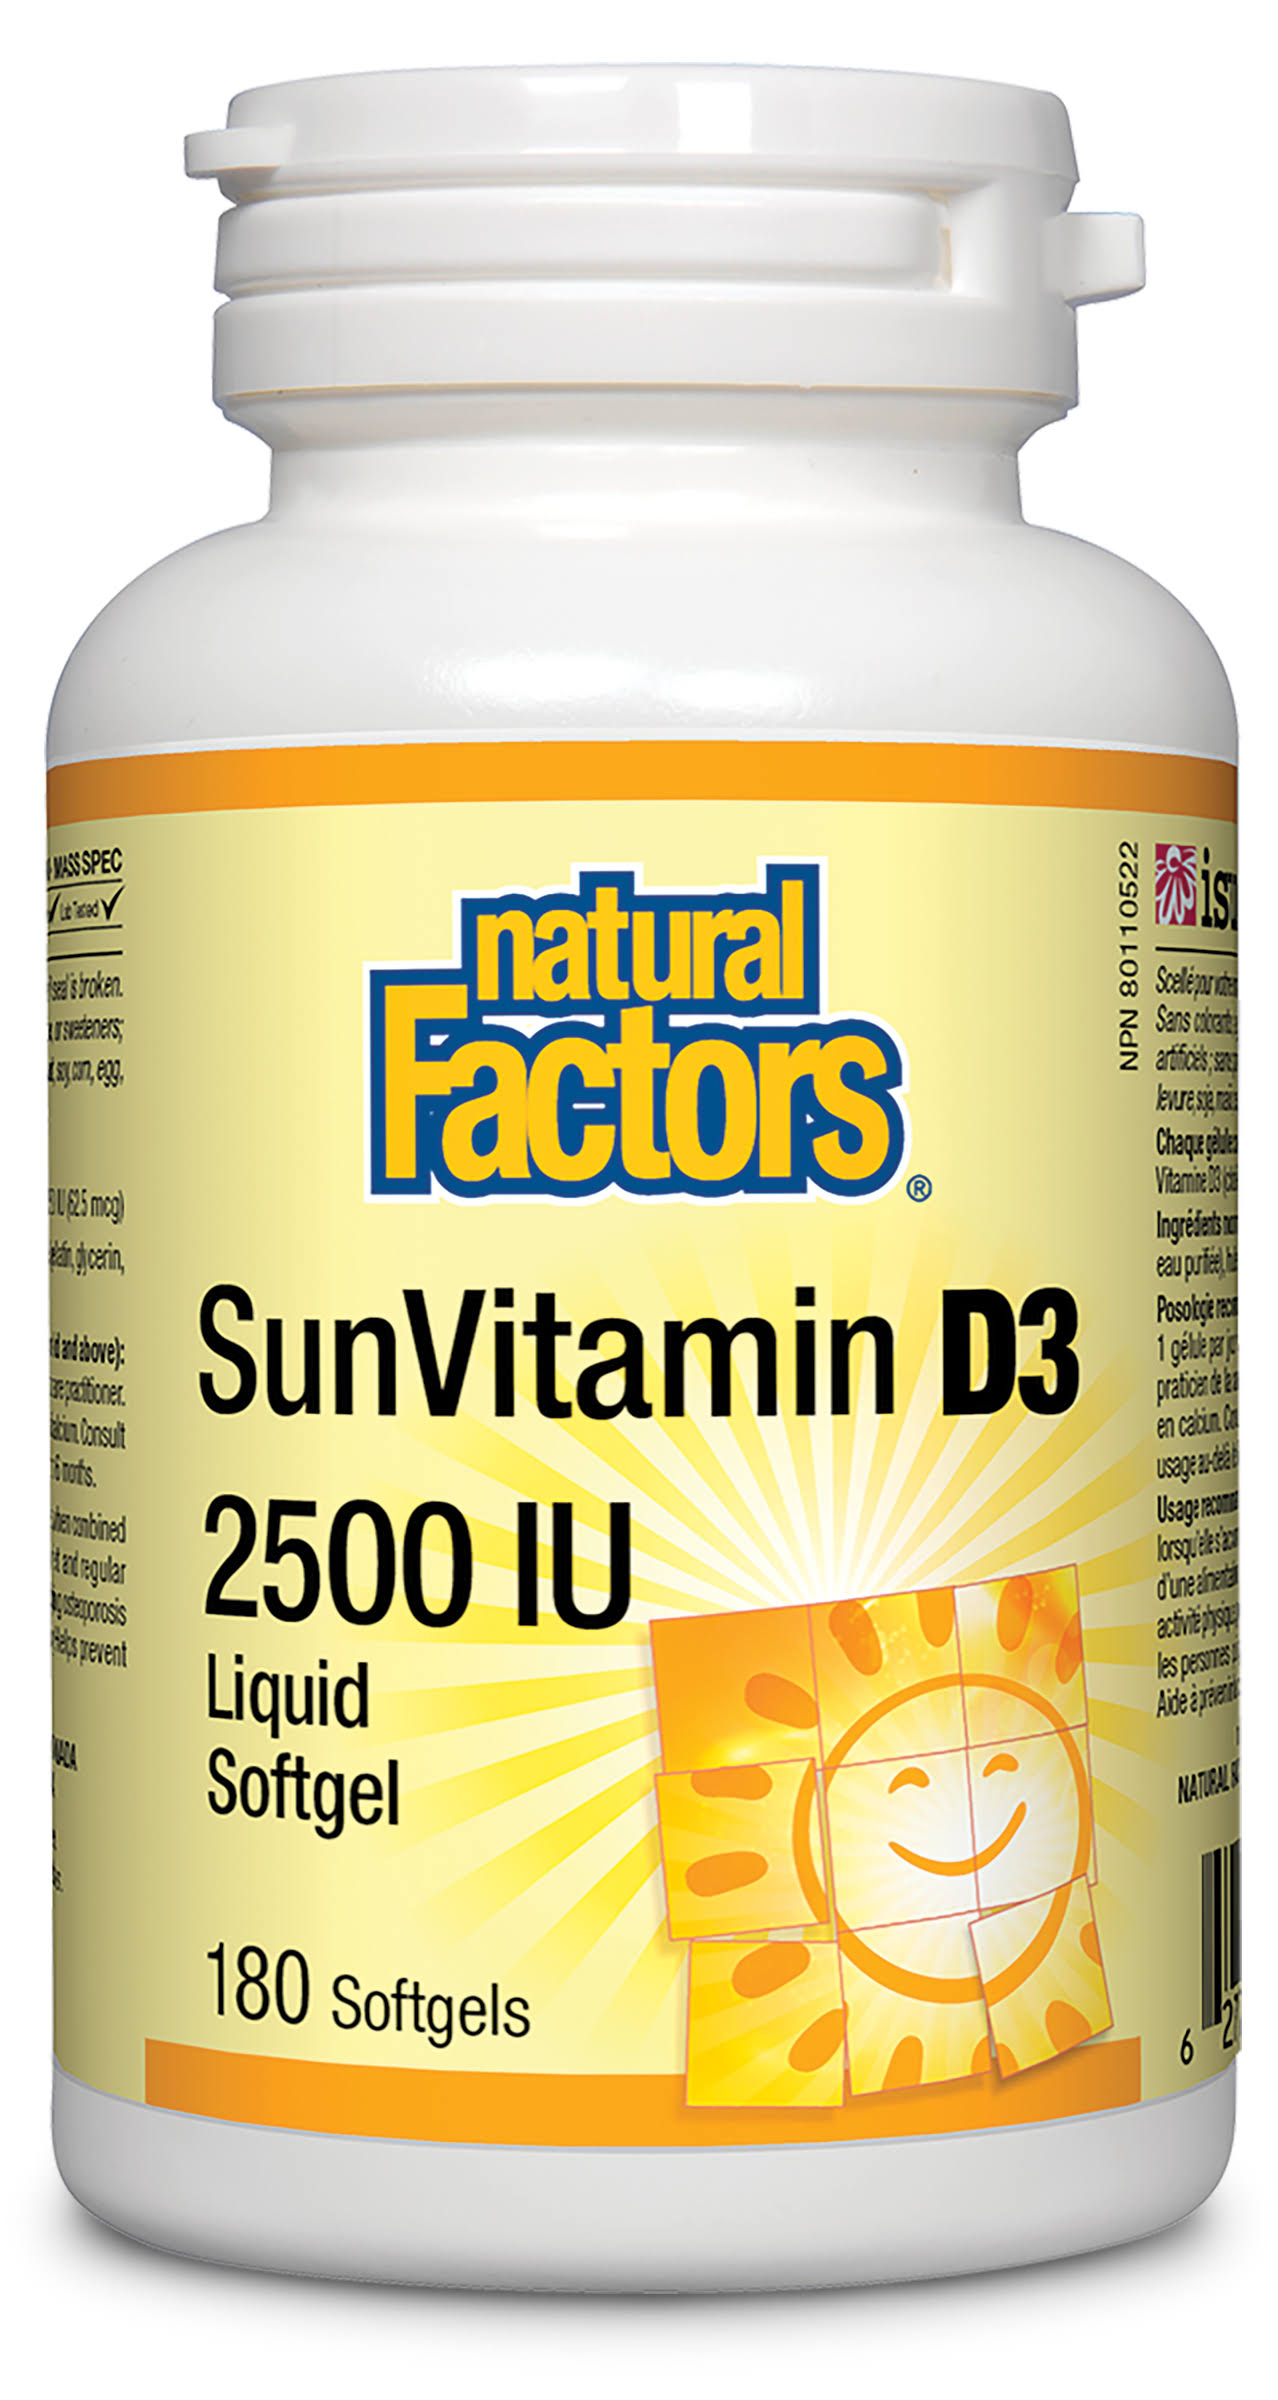 Natural Factors - SunVitamin D3 2500 IU 180 Softgels